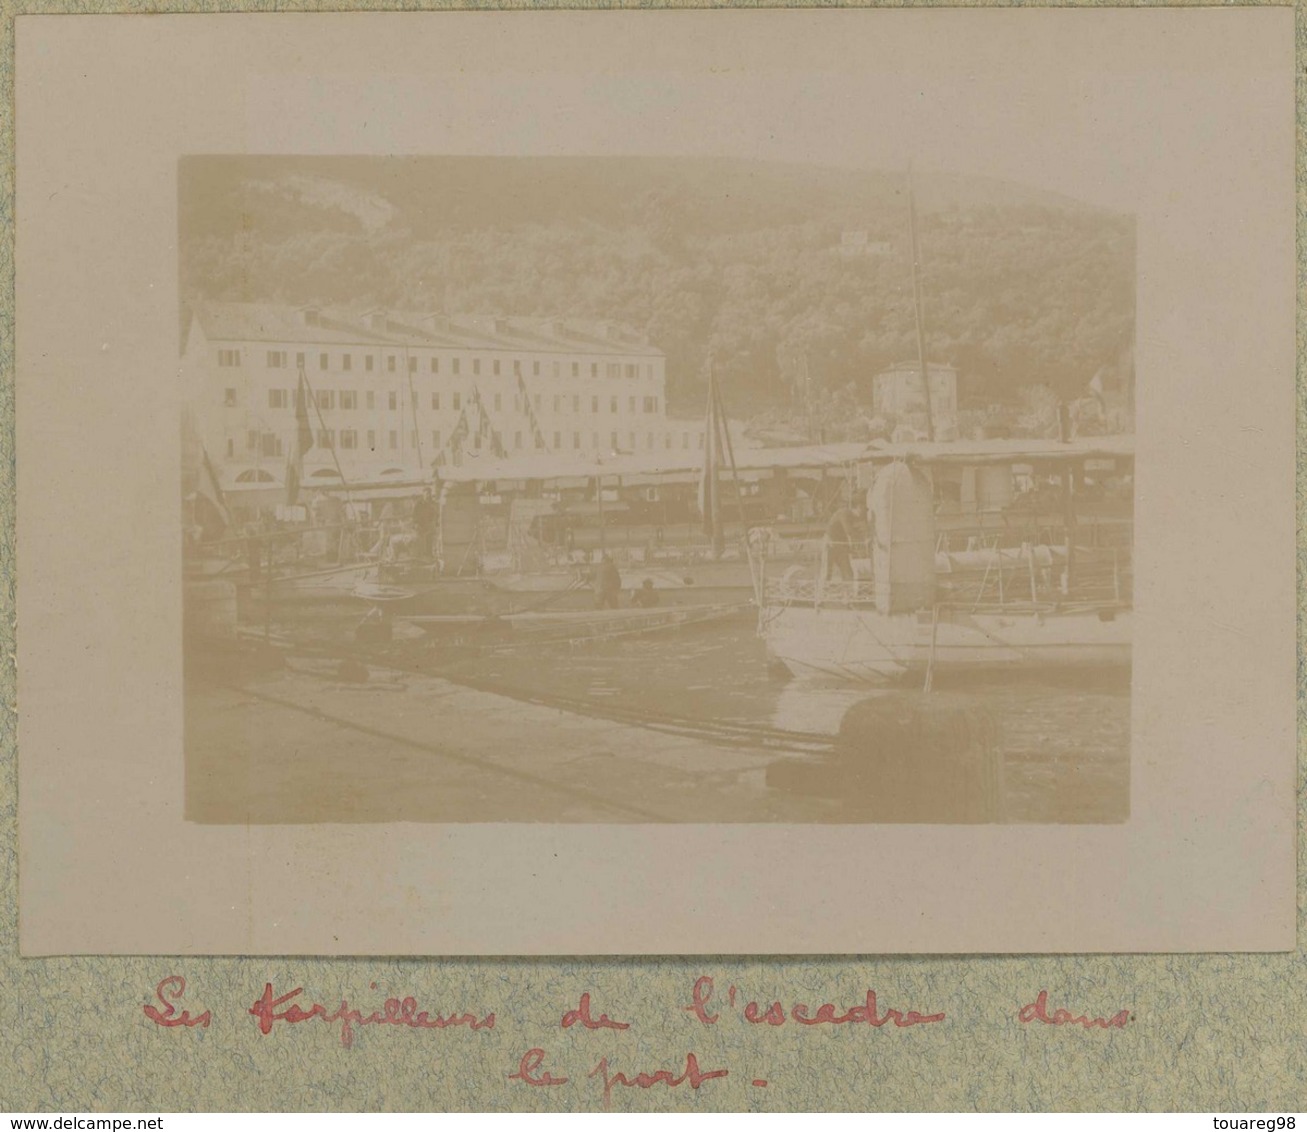 Tirage Circa 1900. Villefranche-sur-Mer (Alpes-Maritimes). Les Torpilleurs De L'escadre Dans Le Port. Bateaux De Guerre. - Places